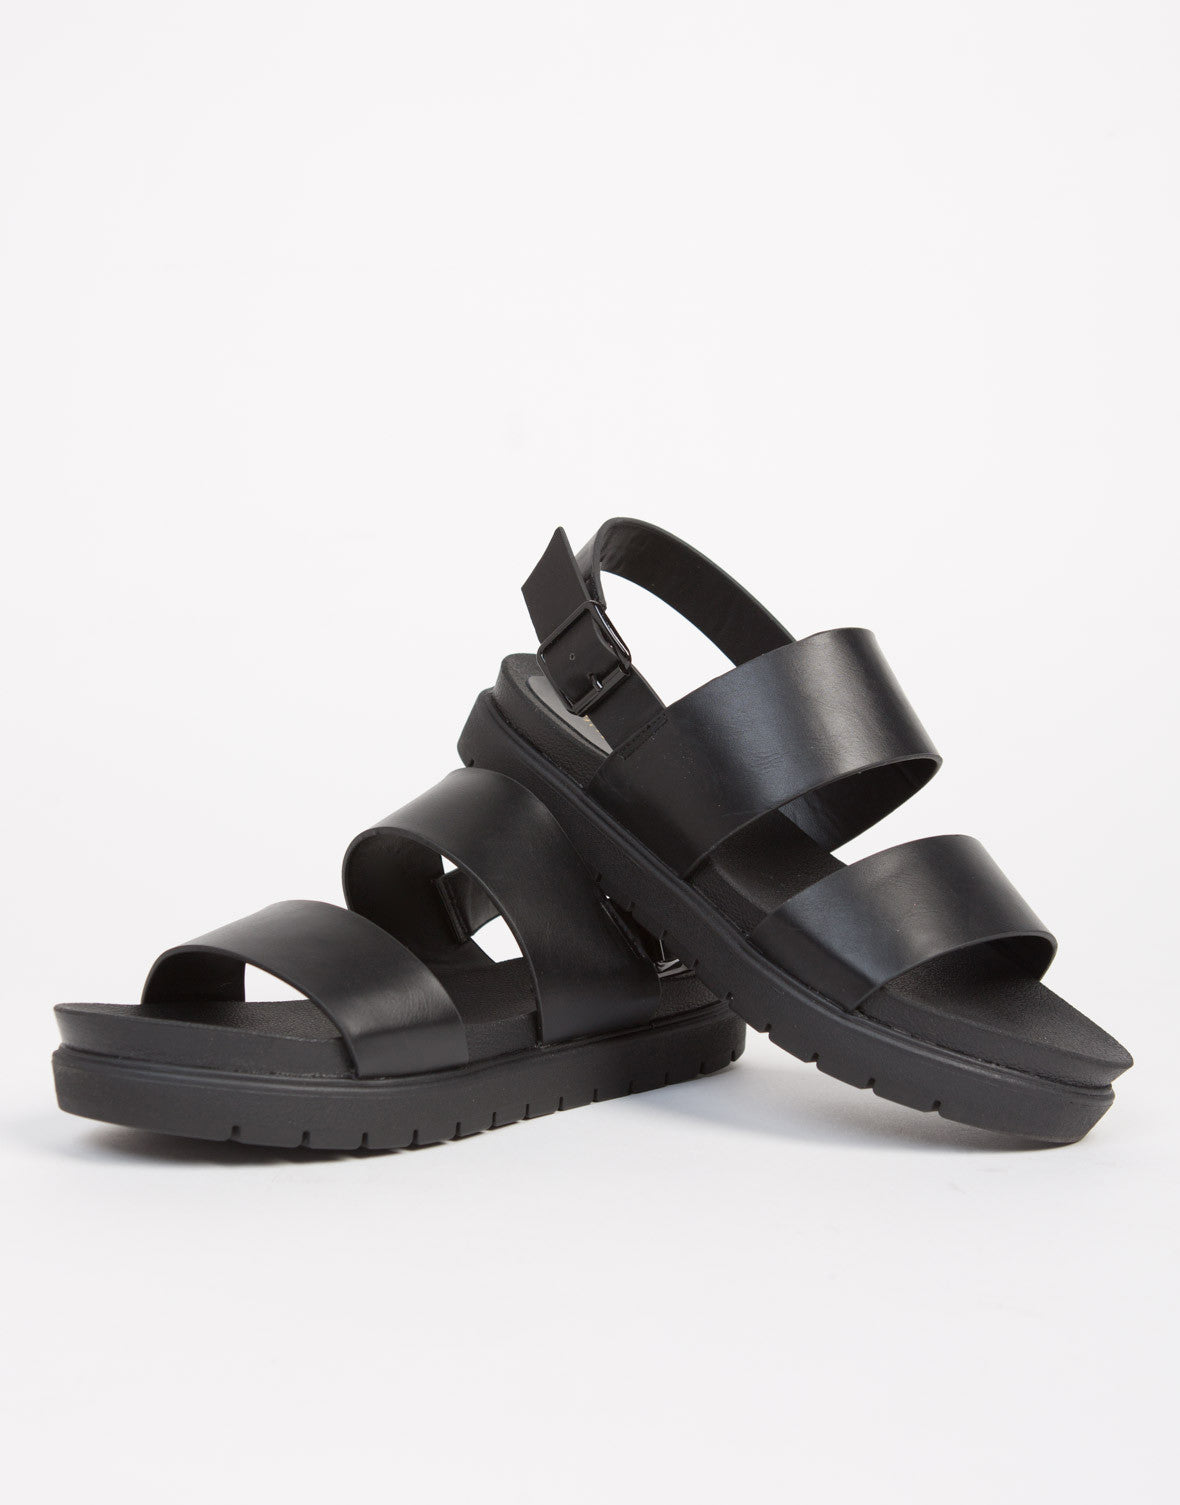 Banded Leather Flatform Sandals - Black Slingback Sandals - Nude ...